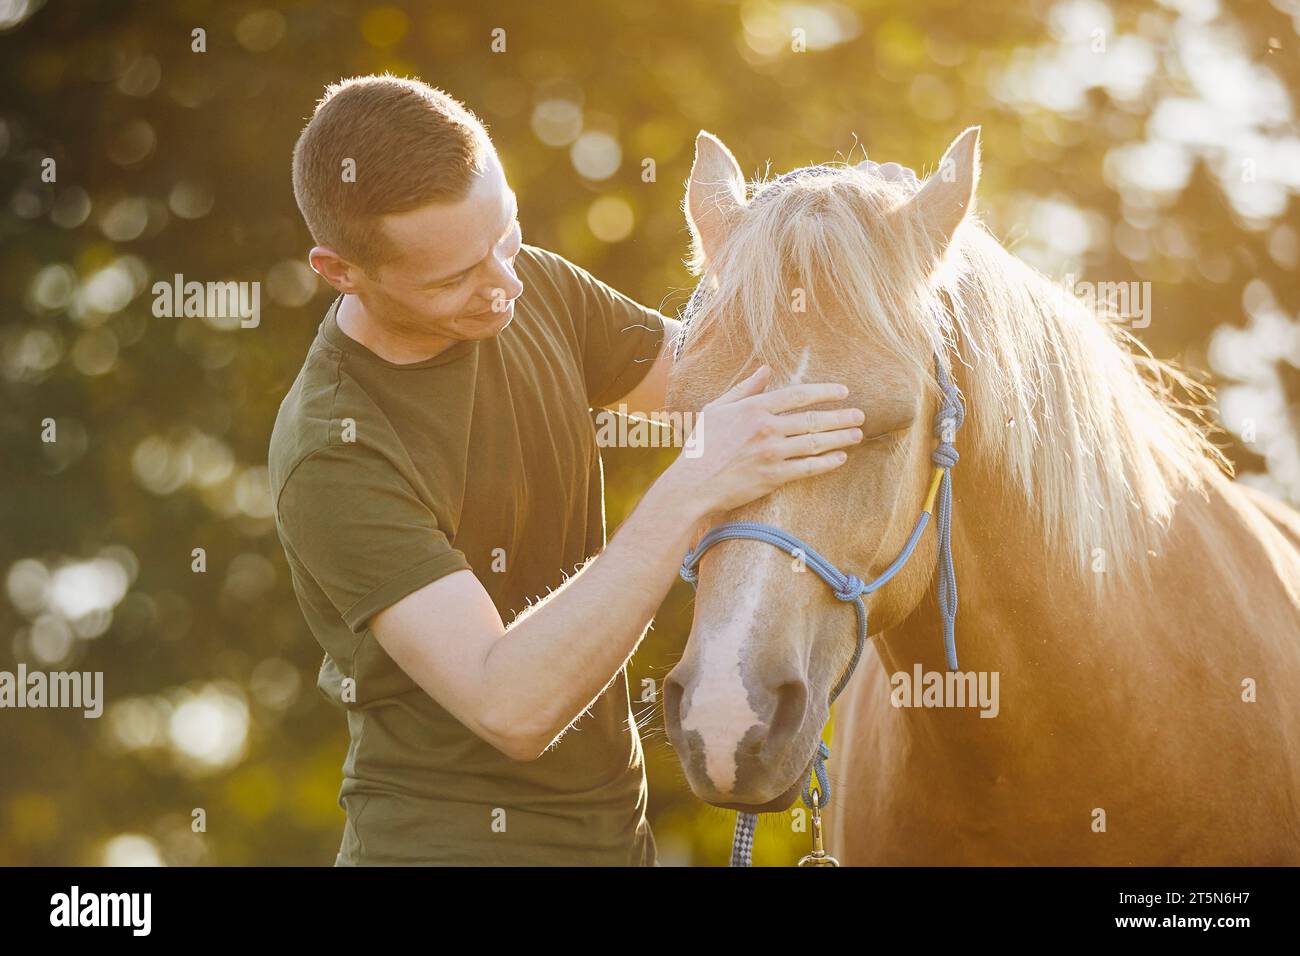 L'uomo sta abbracciando il cavallo da terapia. Temi ippoterapia, cura e amicizia tra persone e animali. Foto Stock